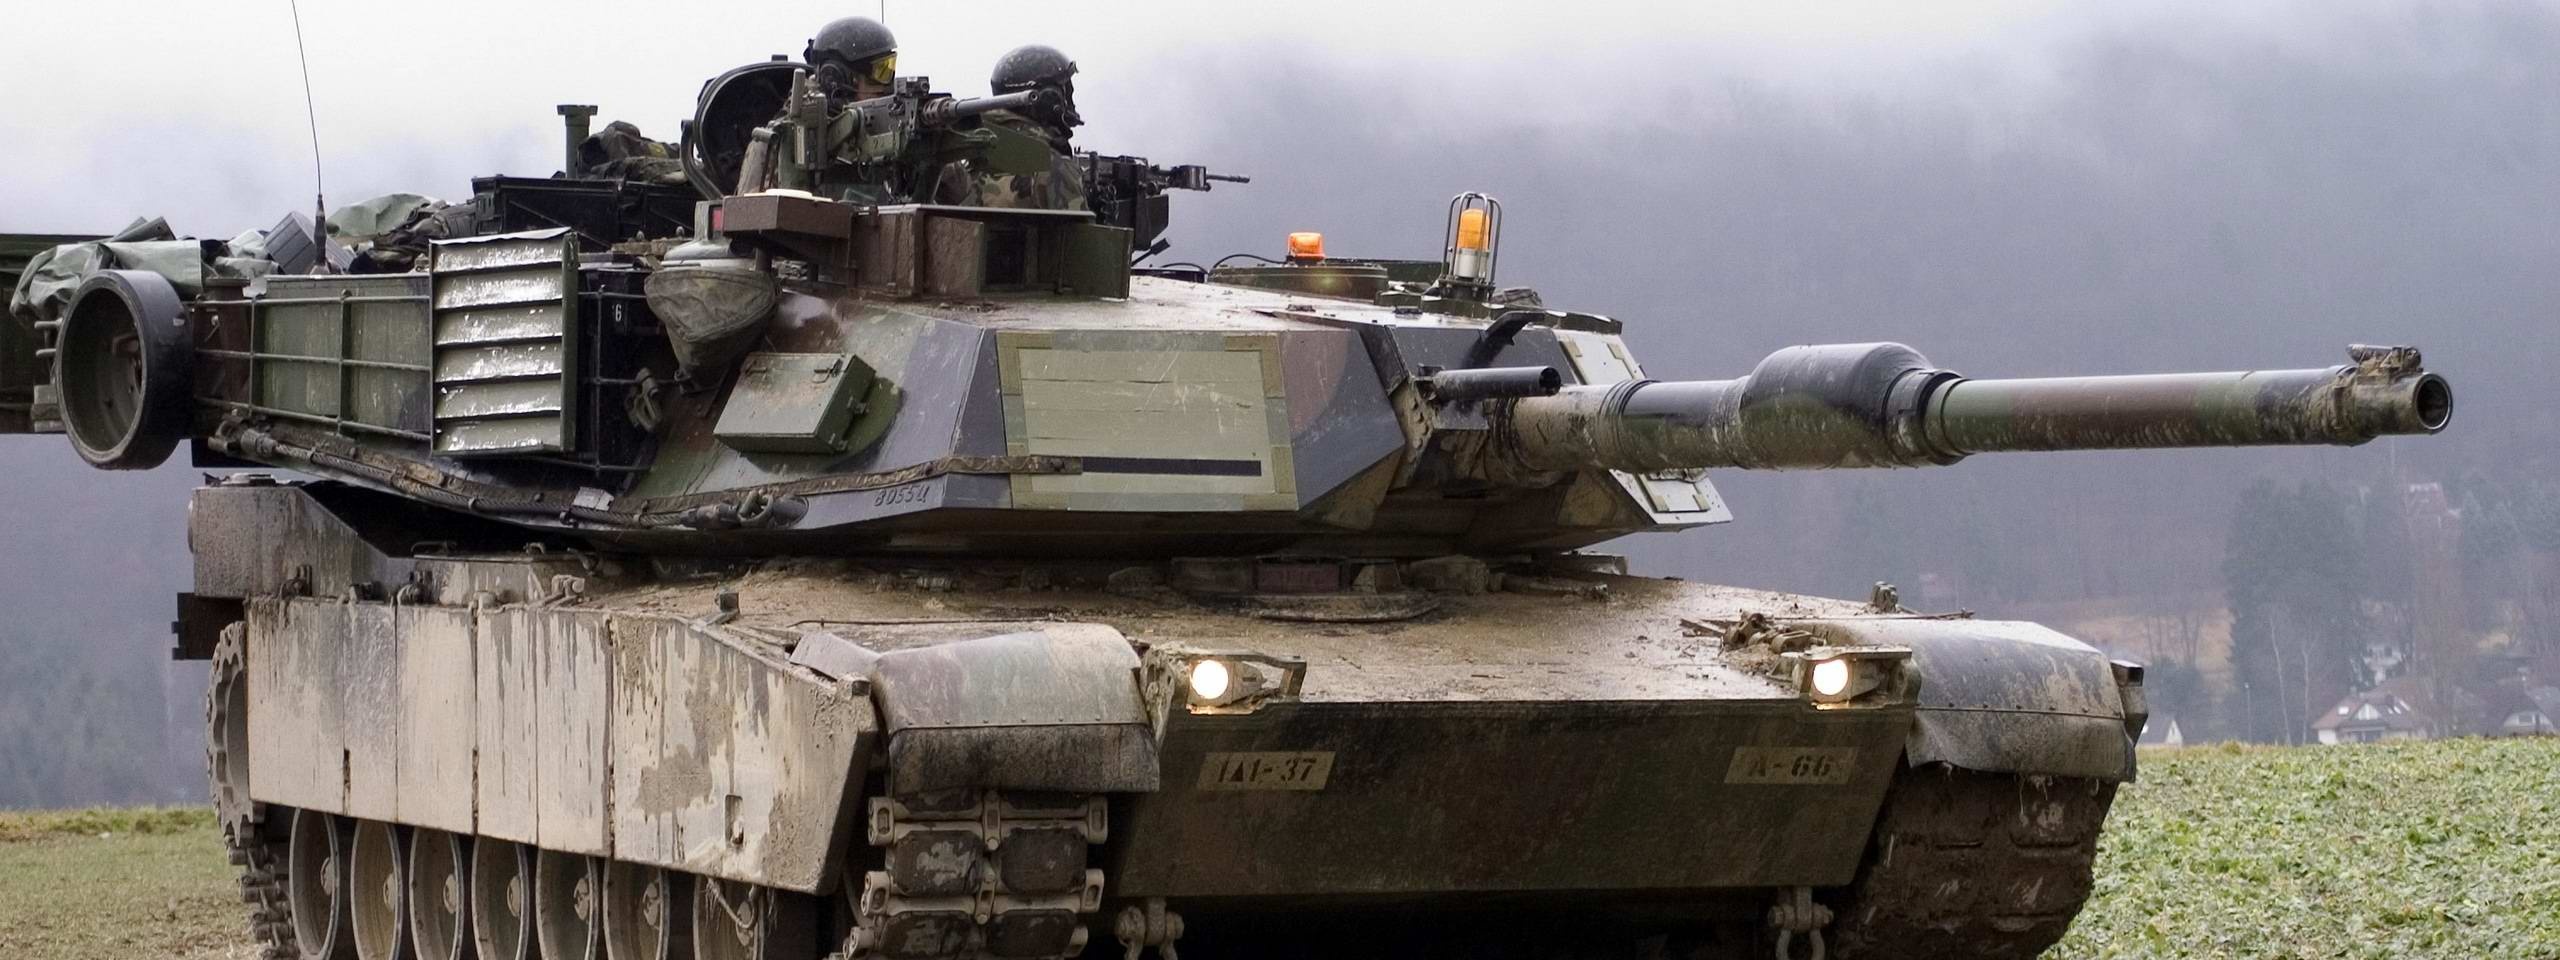 M1a1 Abrams 02